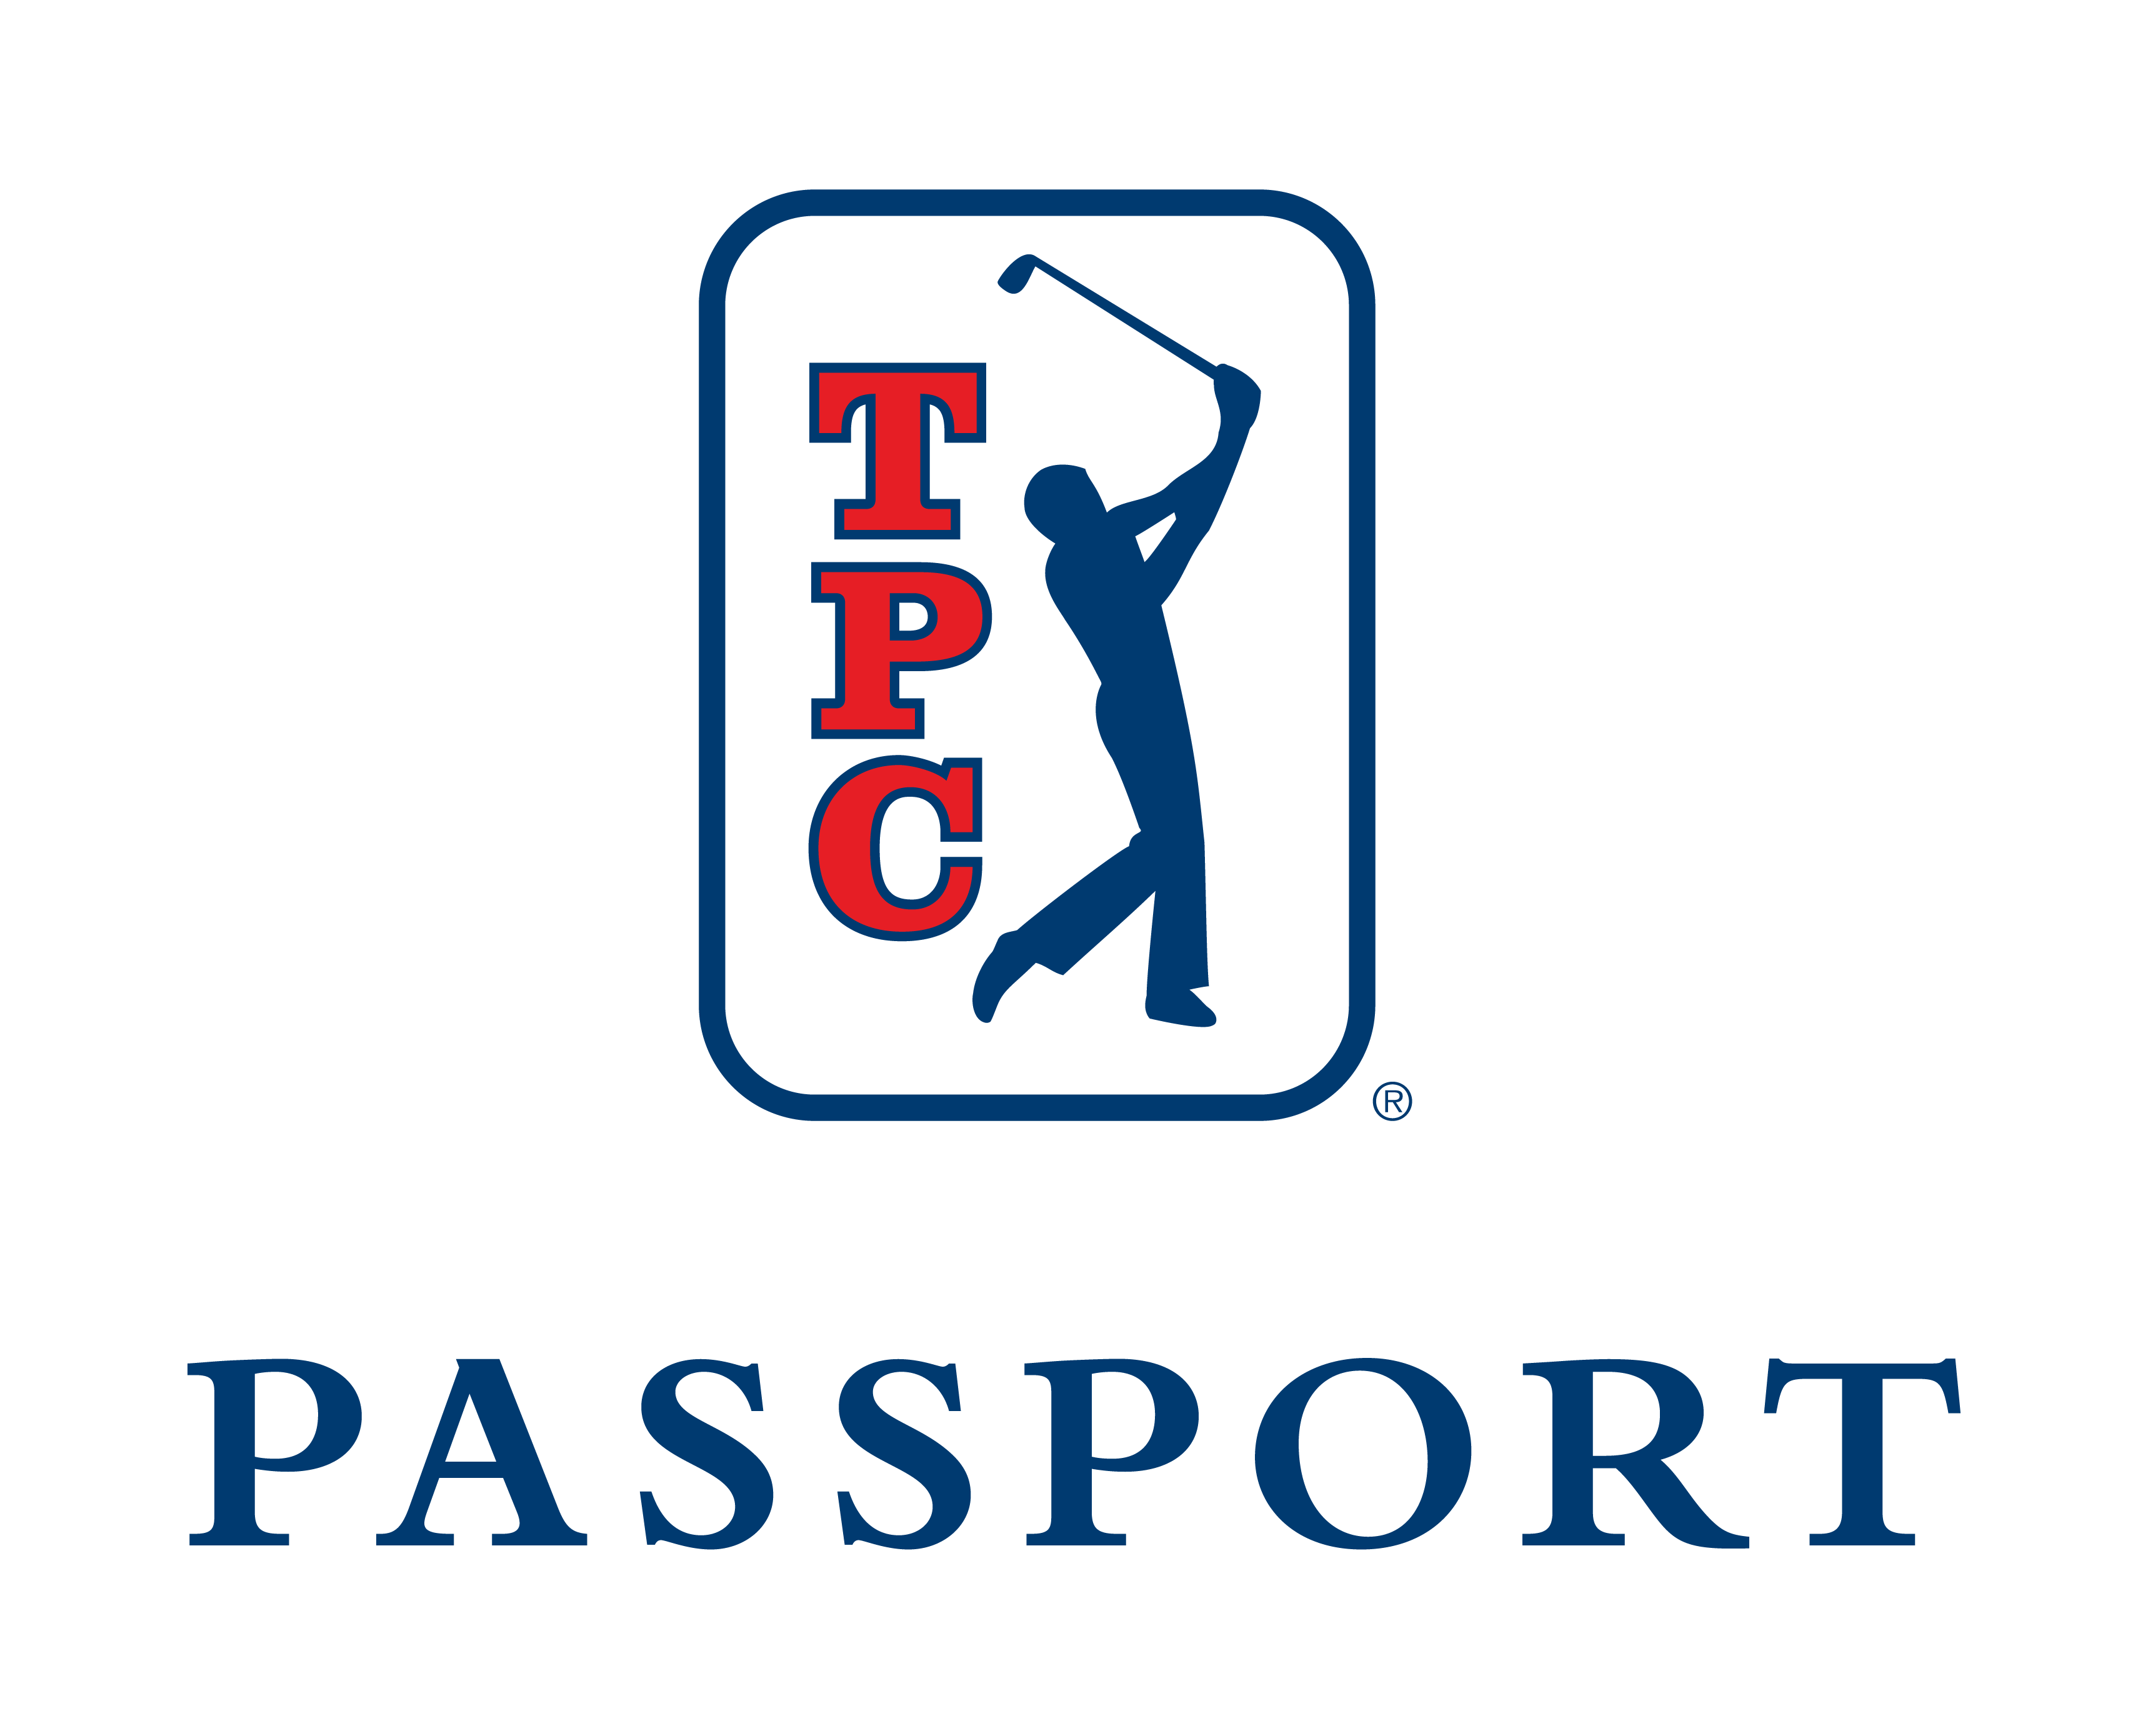 TPC Passport